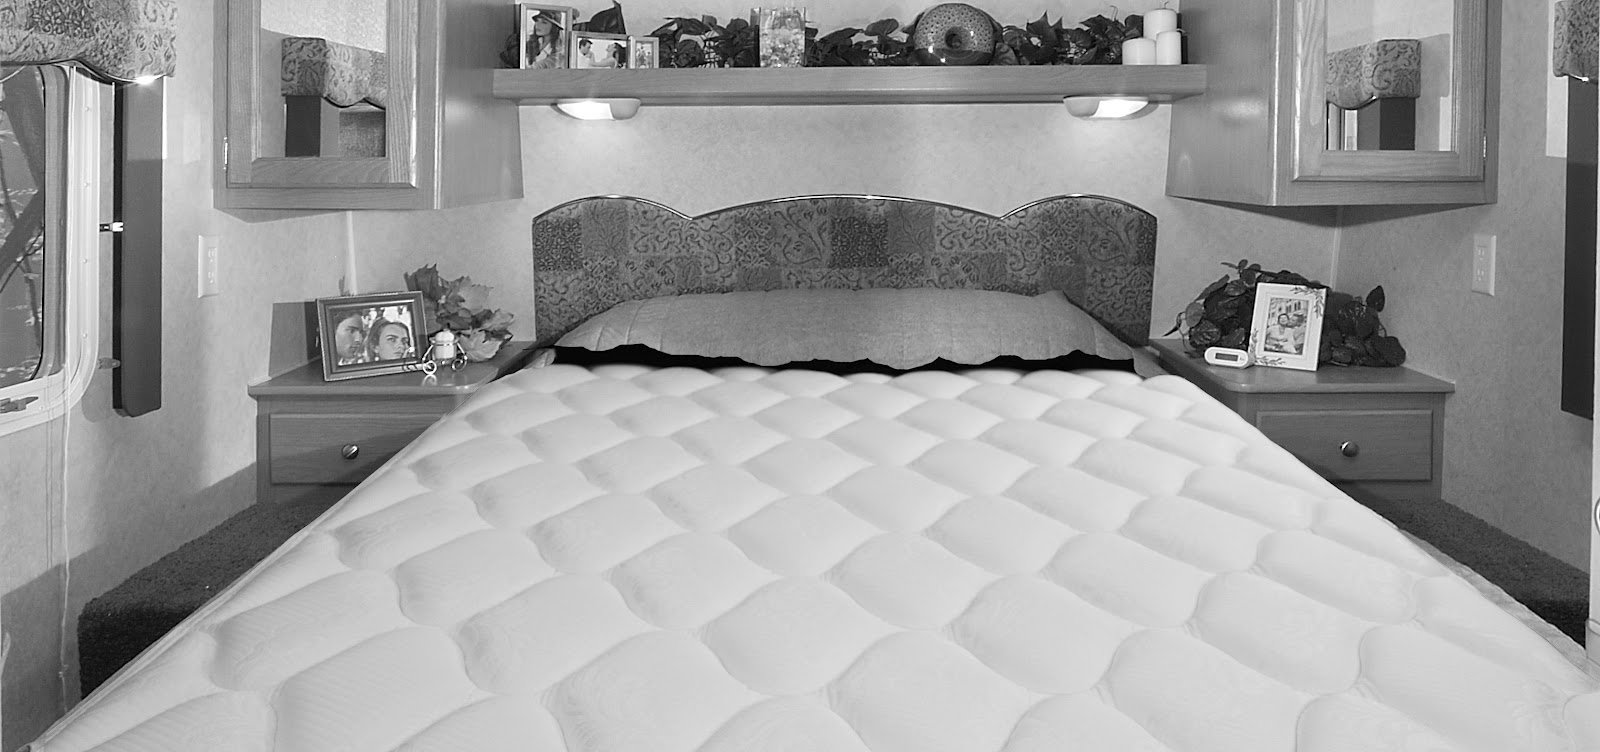 60 x 74 queen mattress